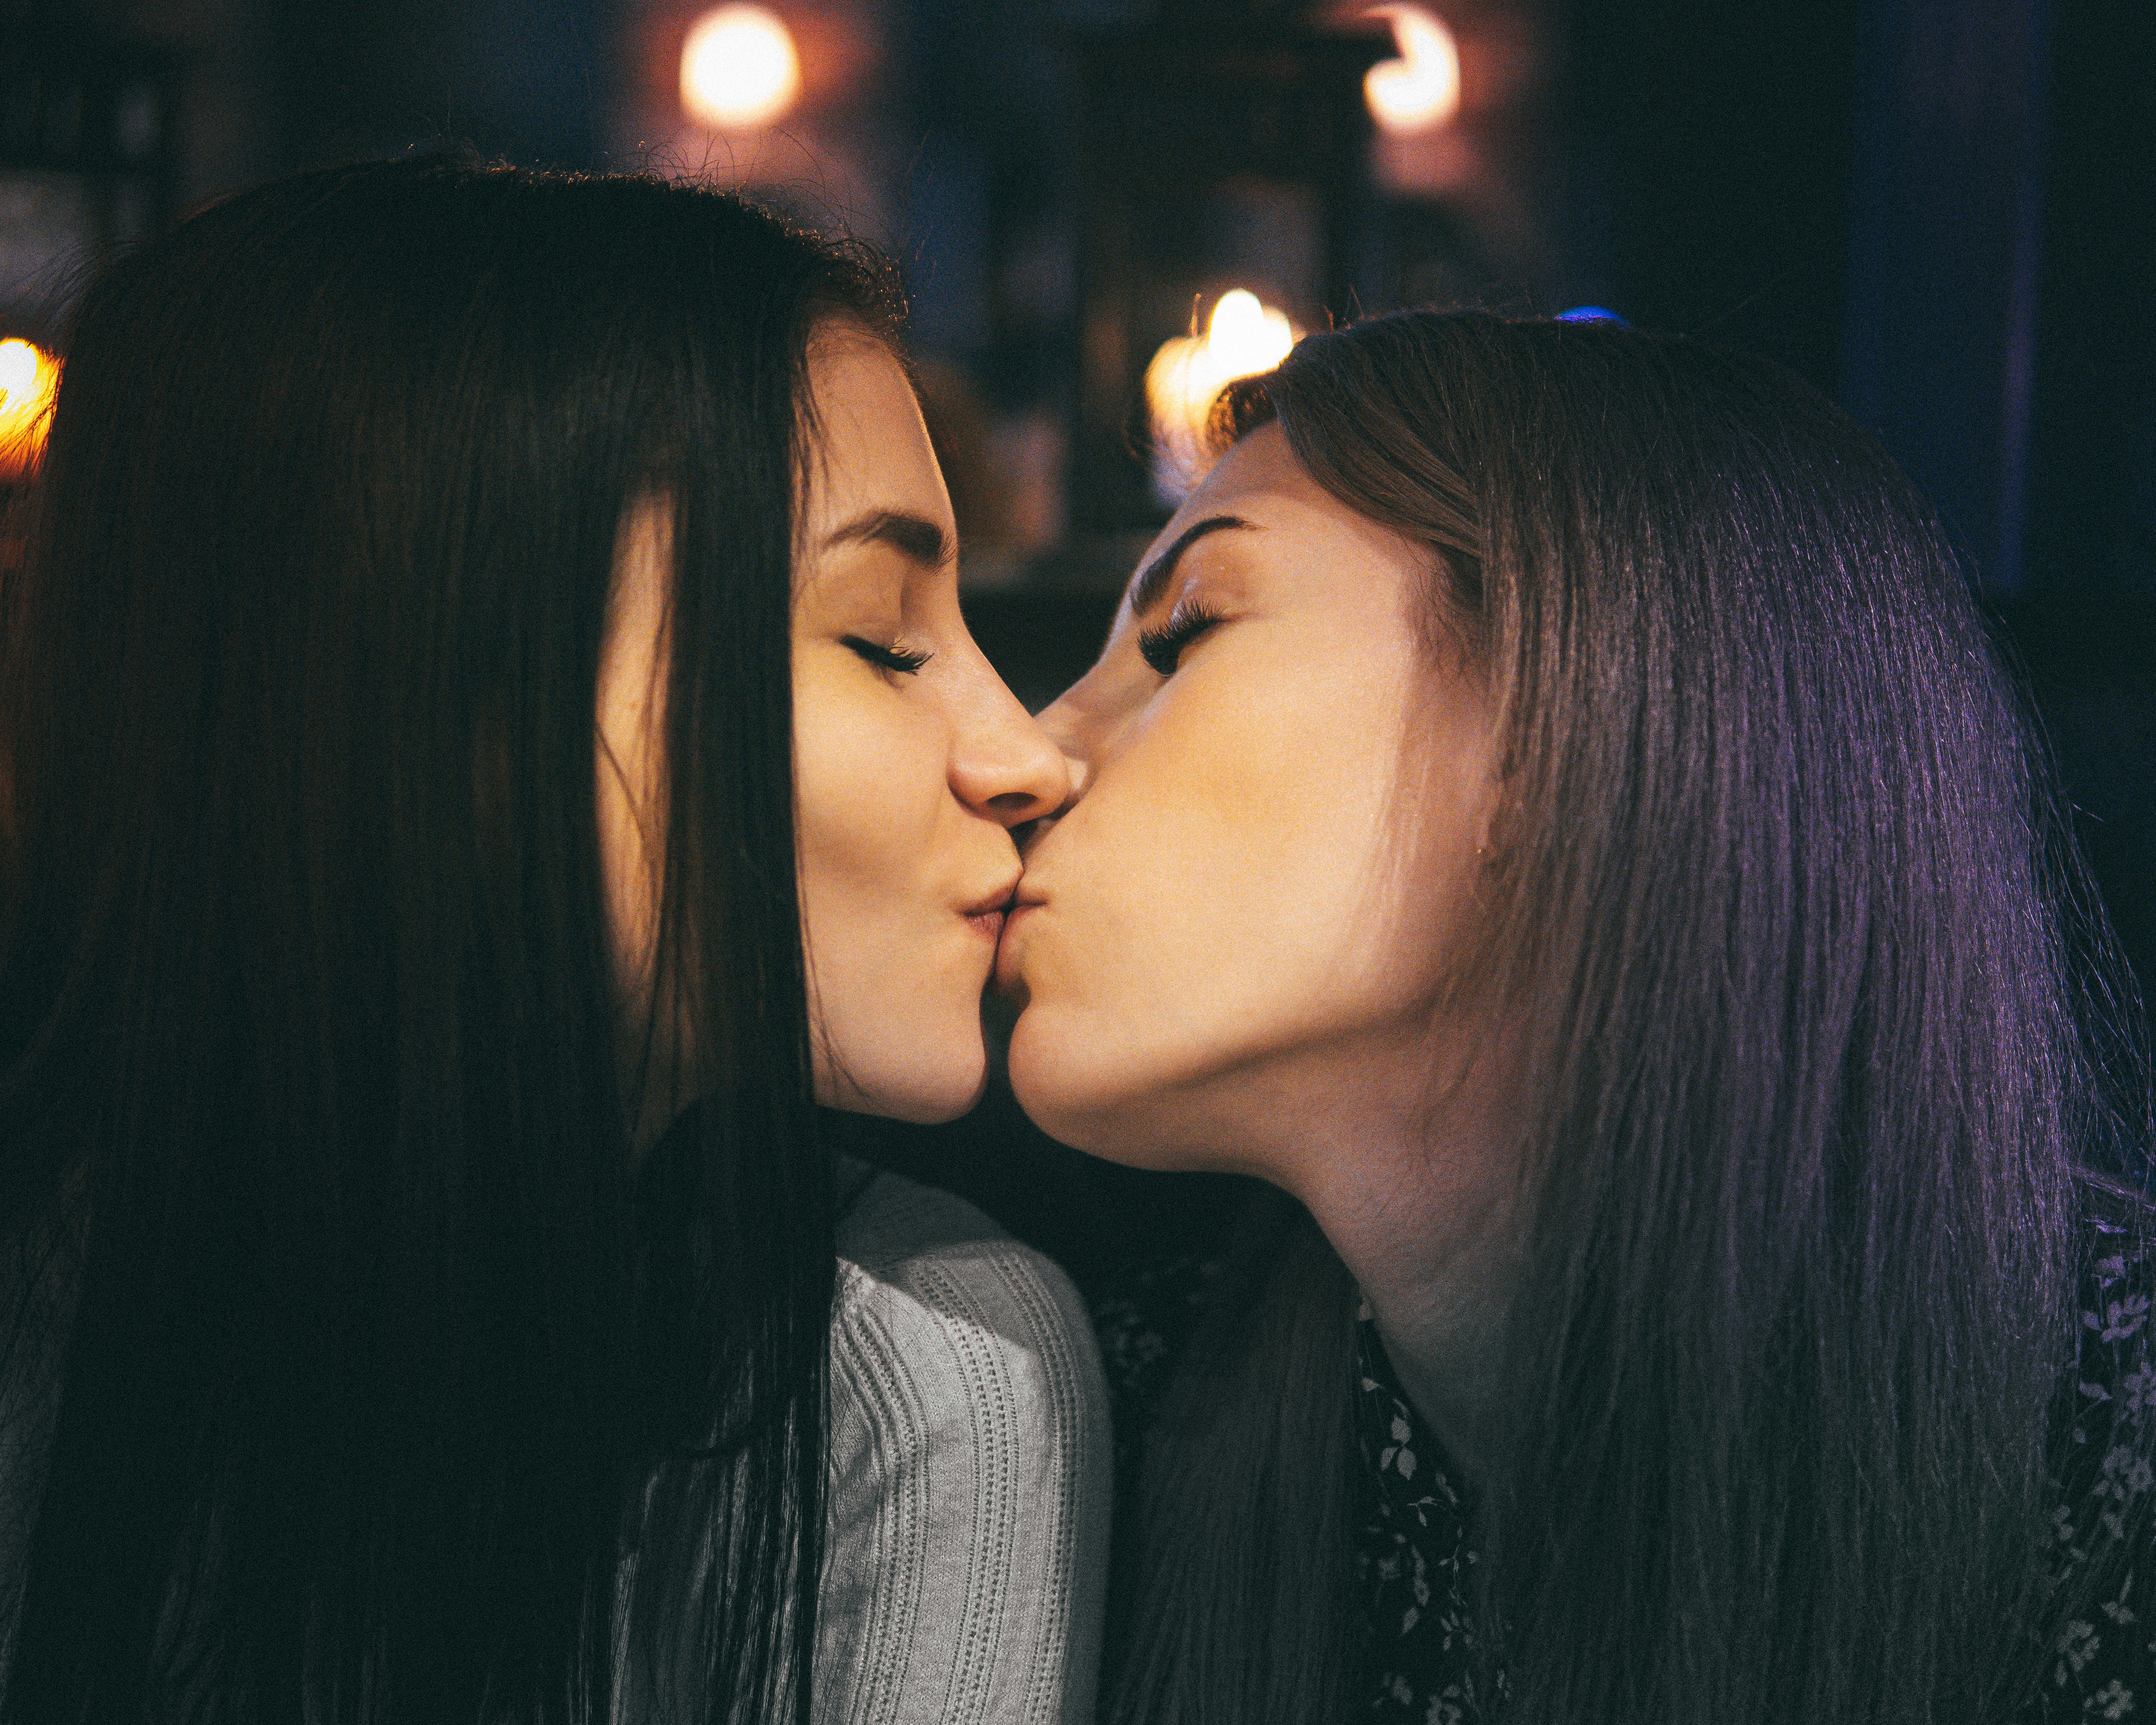 Lesbians 2 girl. Поцелуй девушек. Поцелуй двух девушек. Красивый лесбийский поцелуй. Девушка целует девушку.